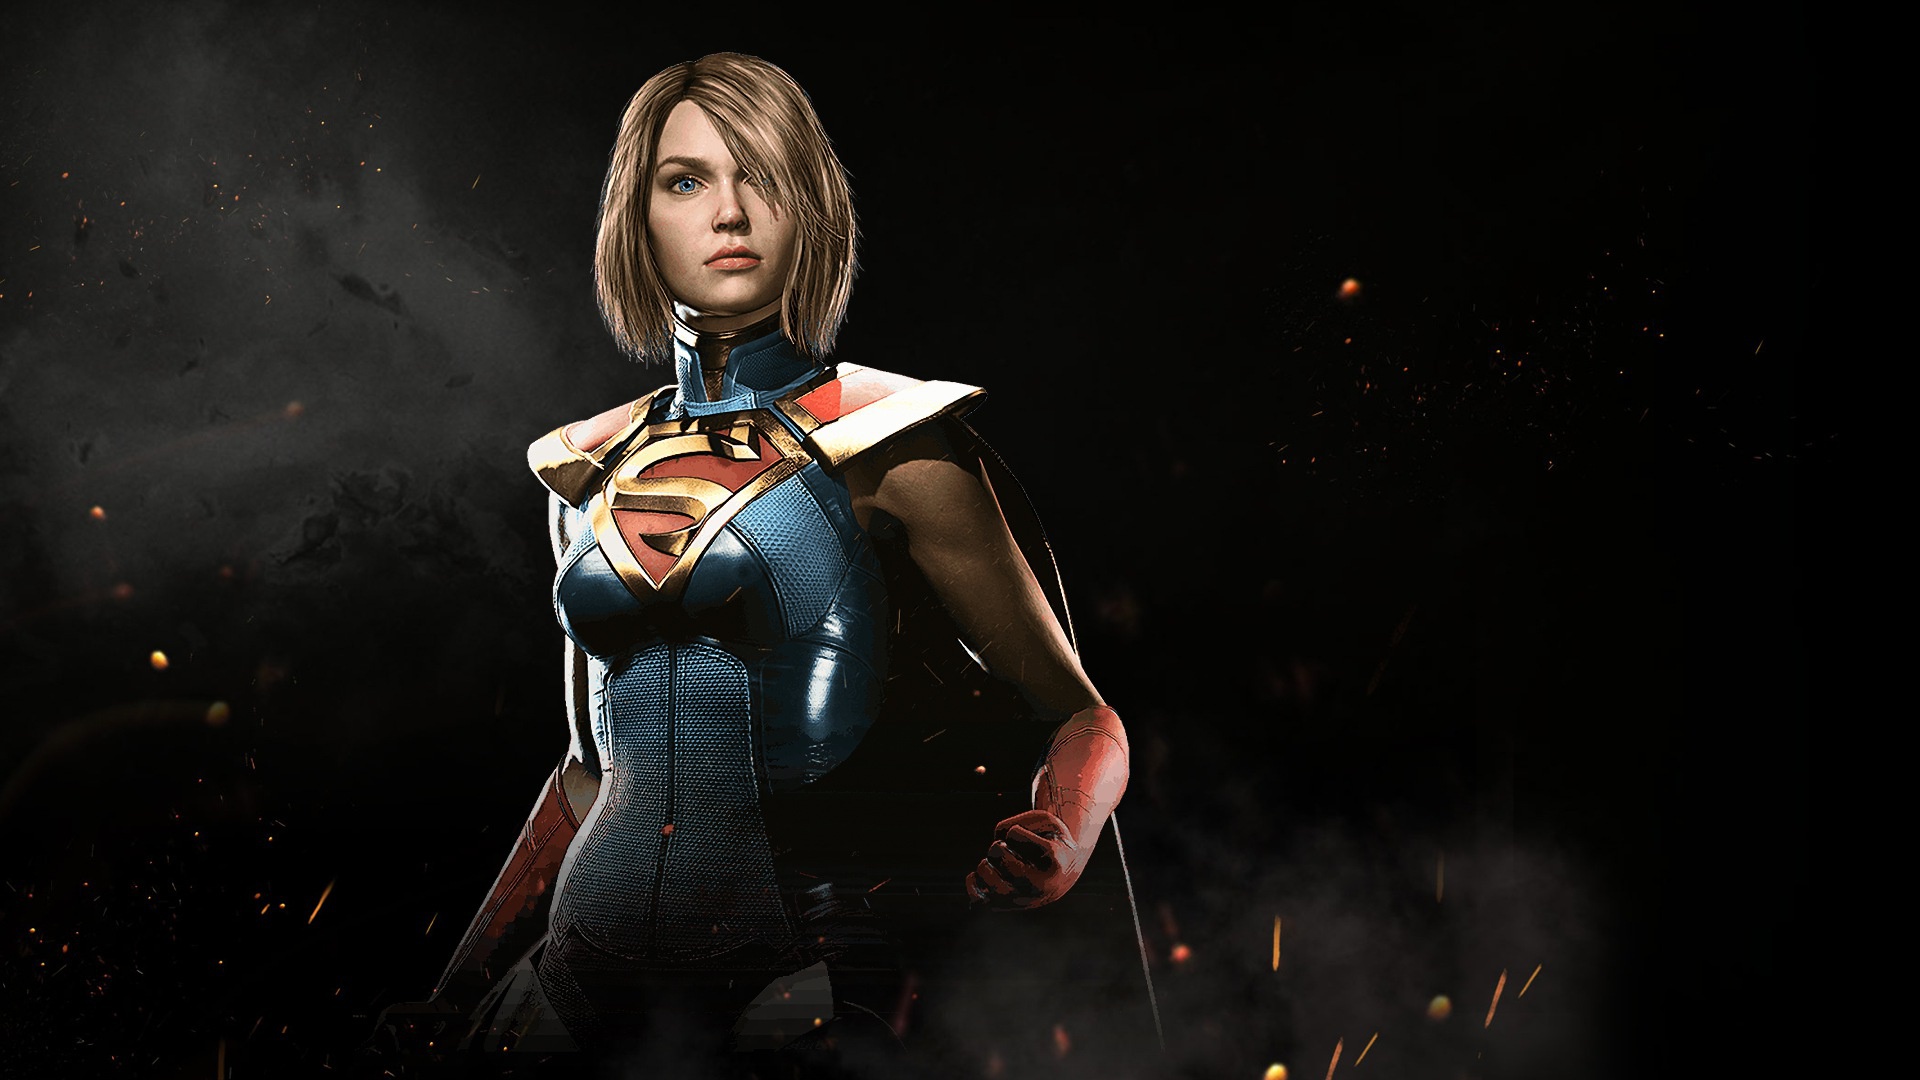 injustice, video game, injustice 2, supergirl 4K